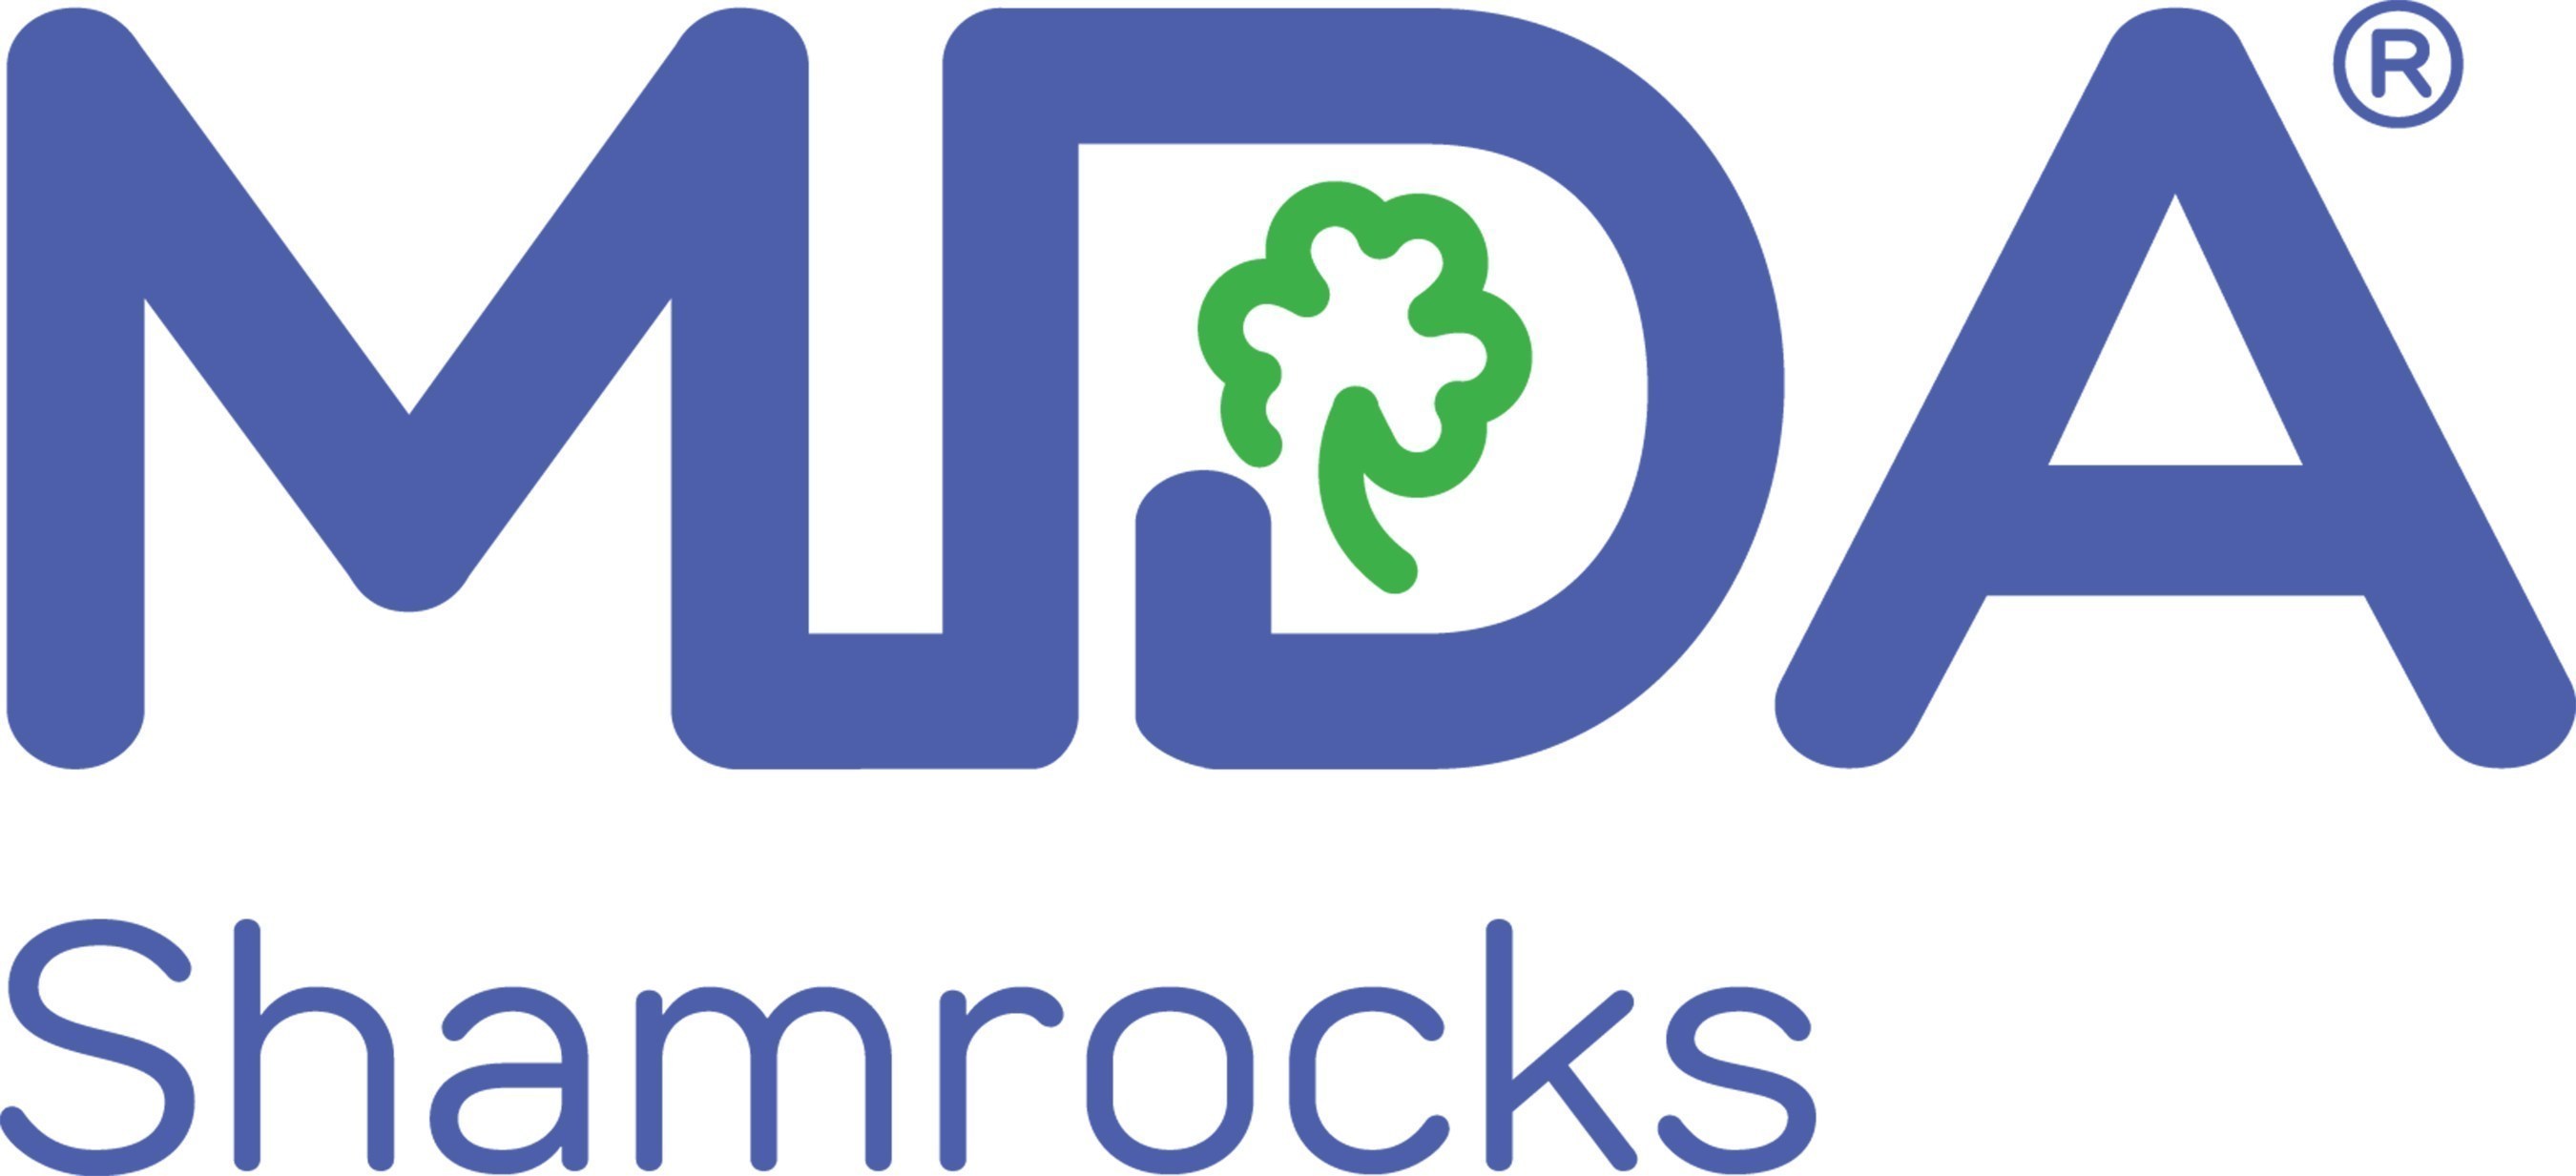 MDA Shamrocks Program